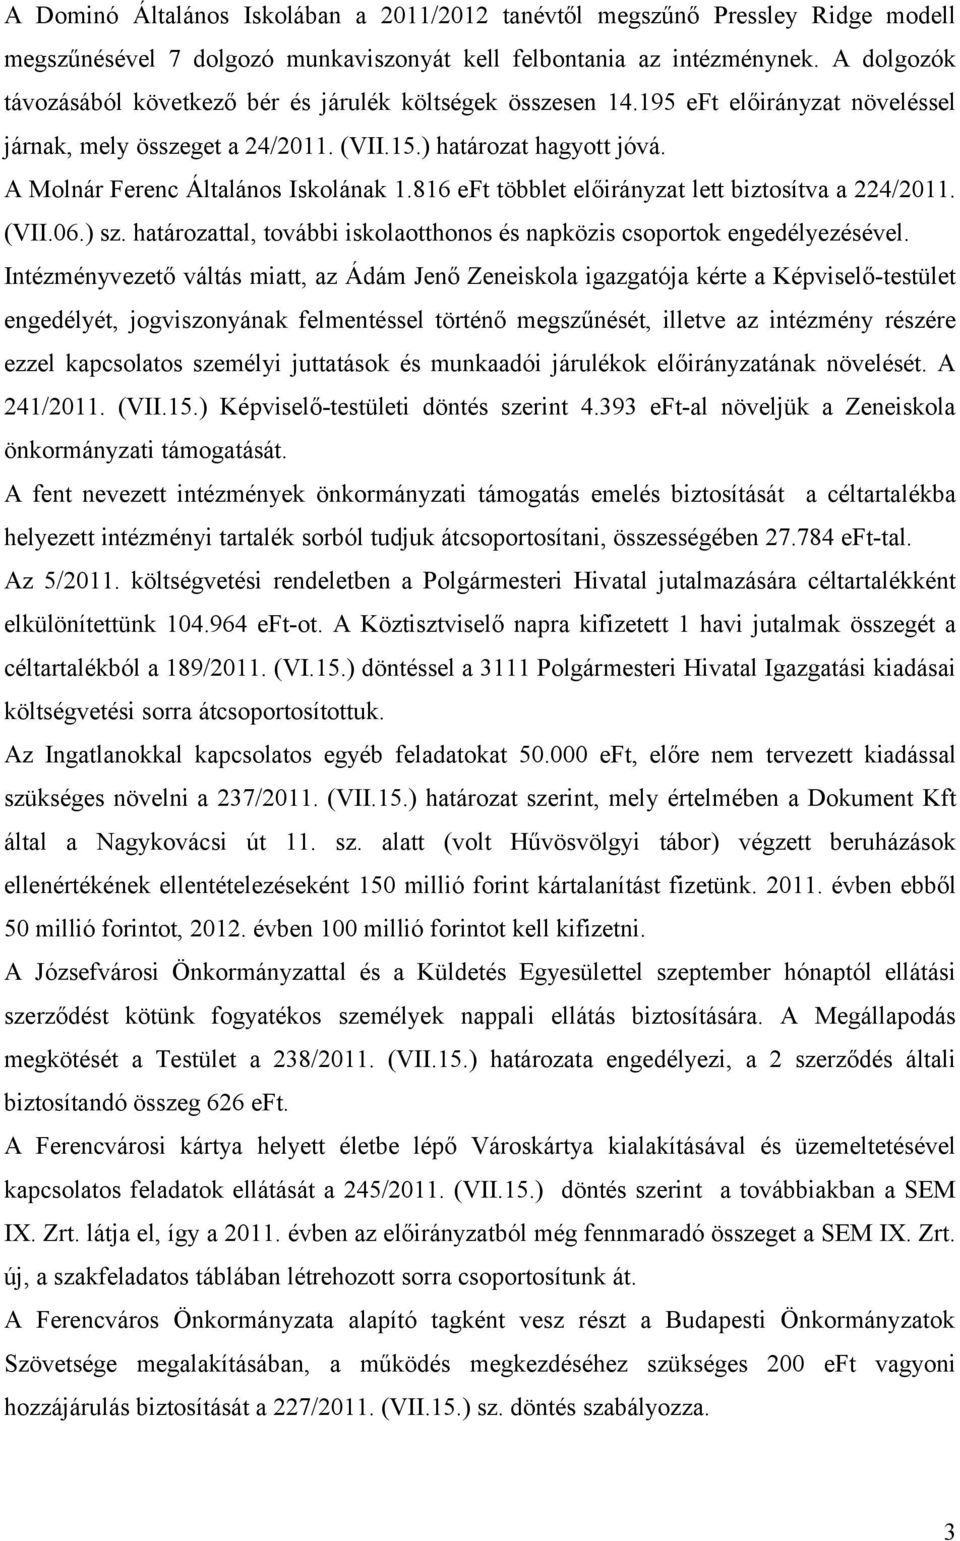 A Molnár Ferenc Általános Iskolának 1.816 eft többlet előirányzat lett biztosítva a 224/2011. (VII.06.) sz. határozattal, további iskolaotthonos és napközis csoportok engedélyezésével.